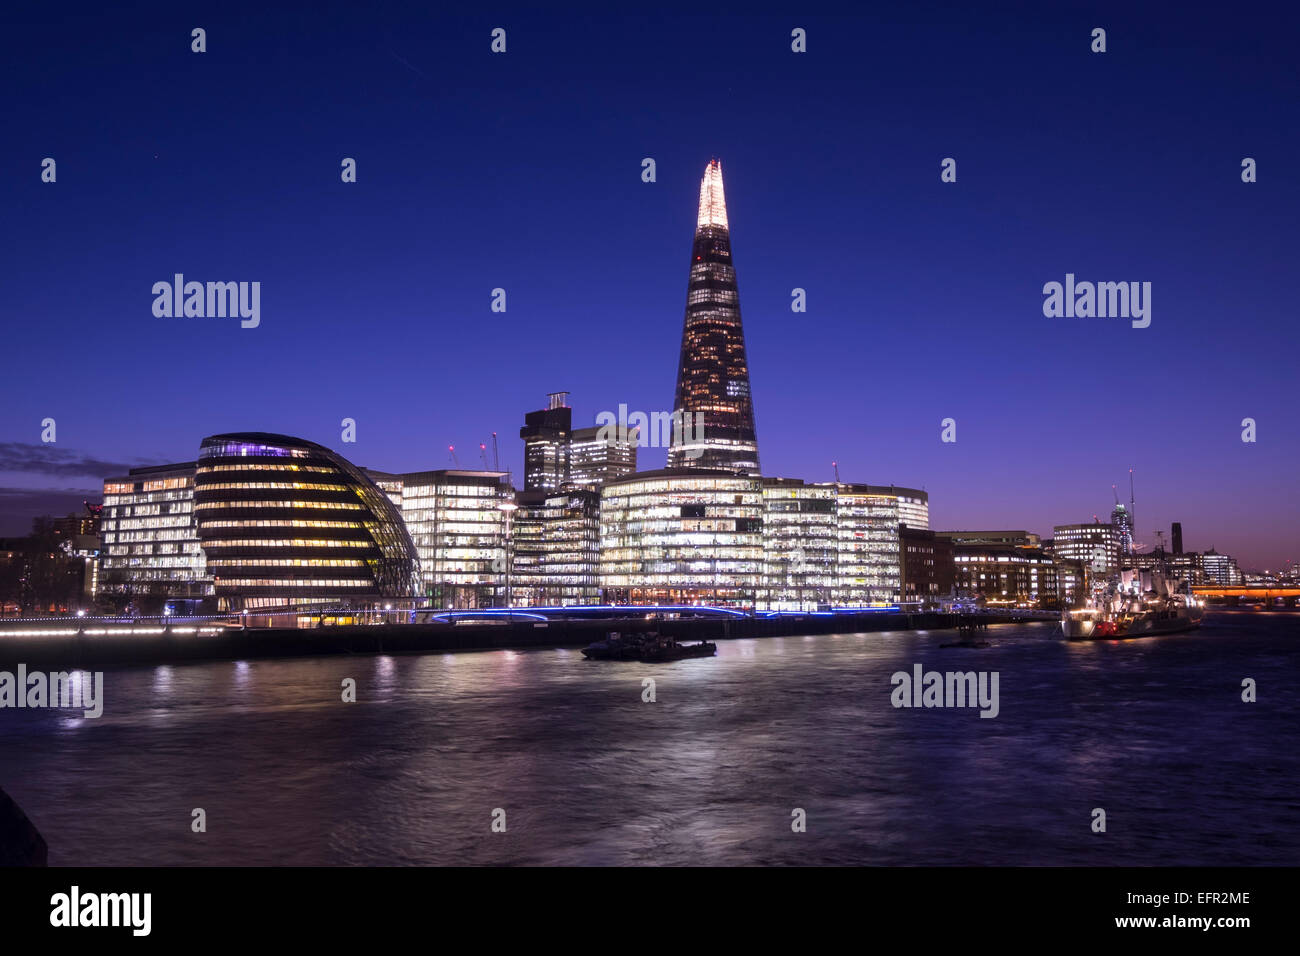 Ein Stadtbild von London, England, einschließlich der Entwicklung mehr London. Stockfoto